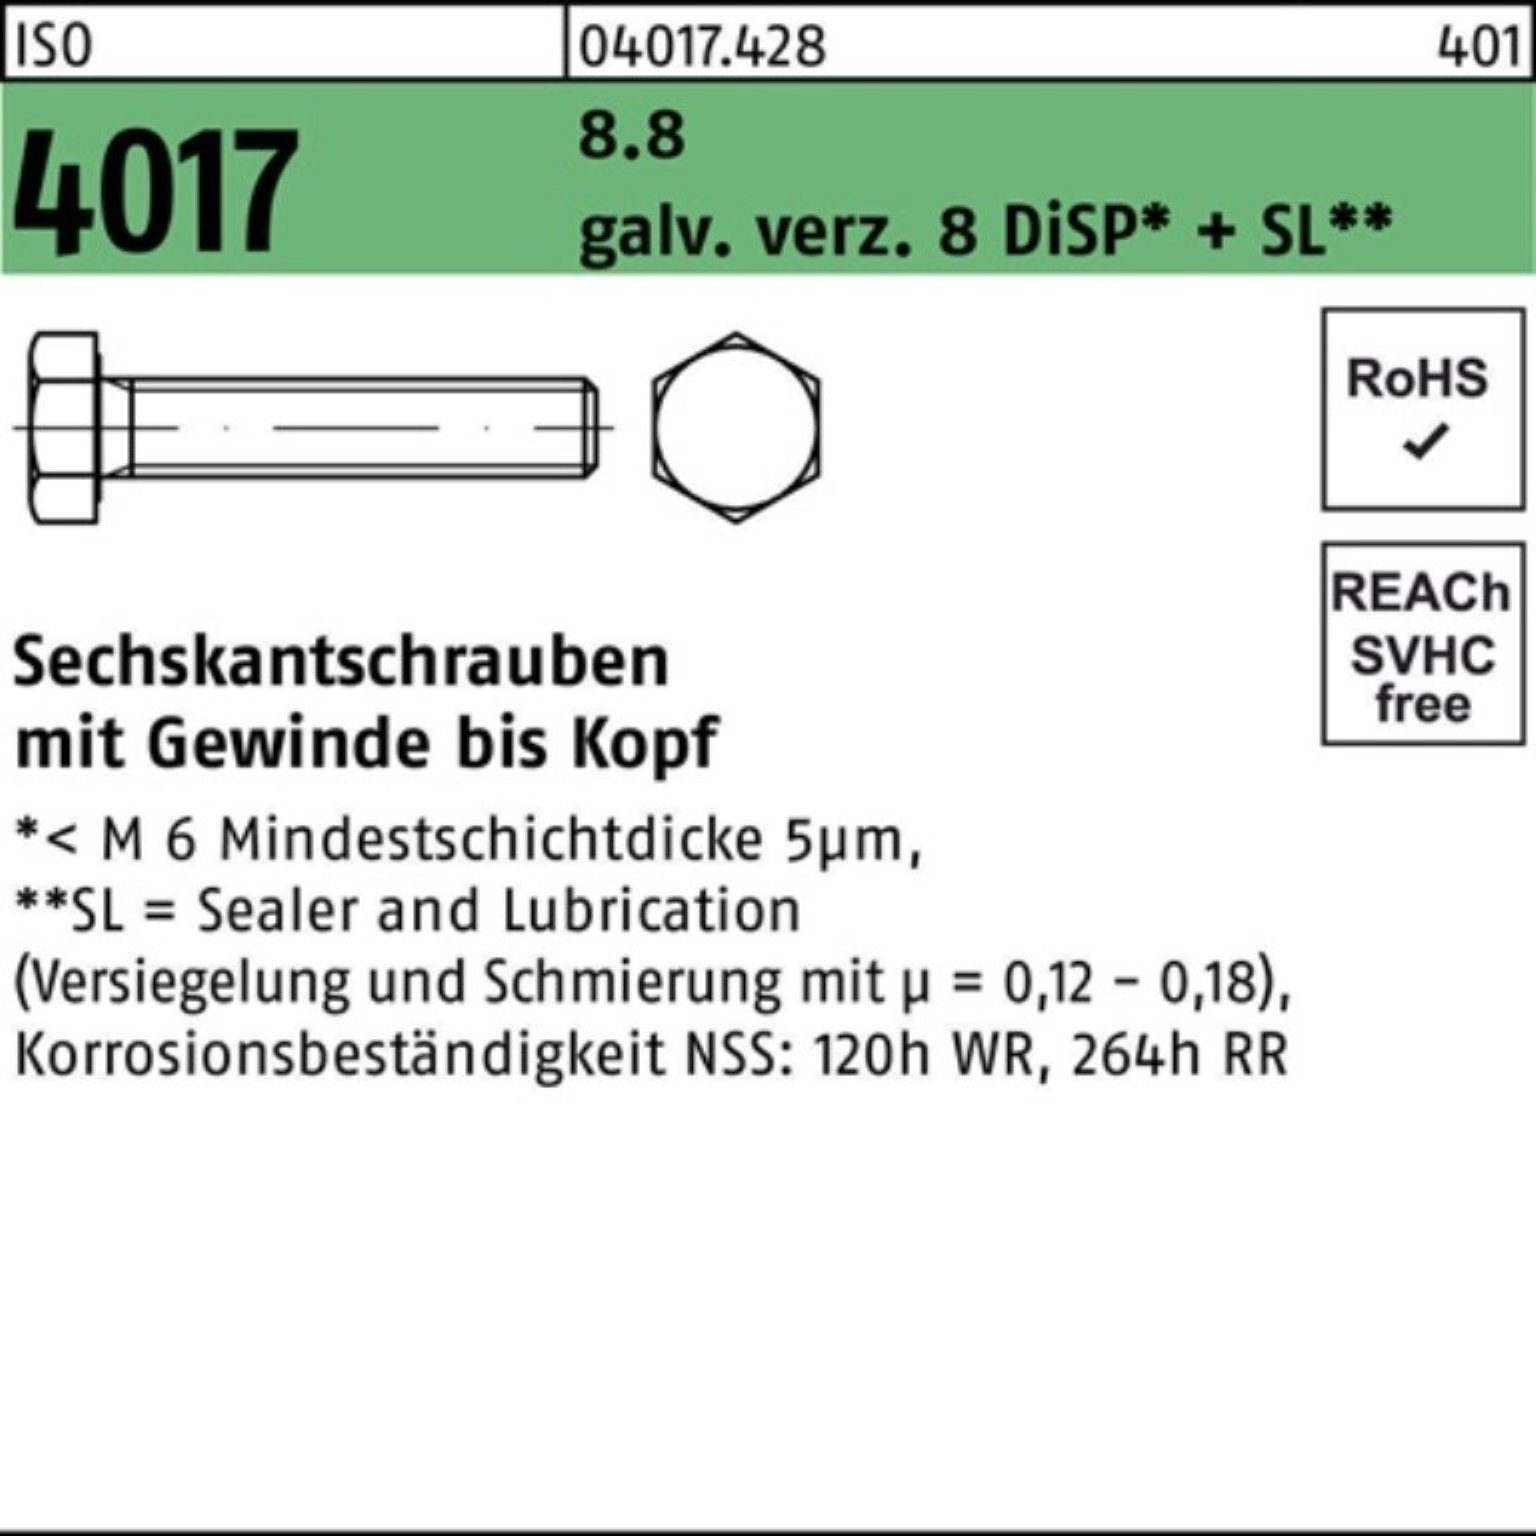 8 Pack ISO galv.verz. Bufab Sechskantschraube Sechskantschraube 4017 8.8 M14x VG DiSP 45 100er